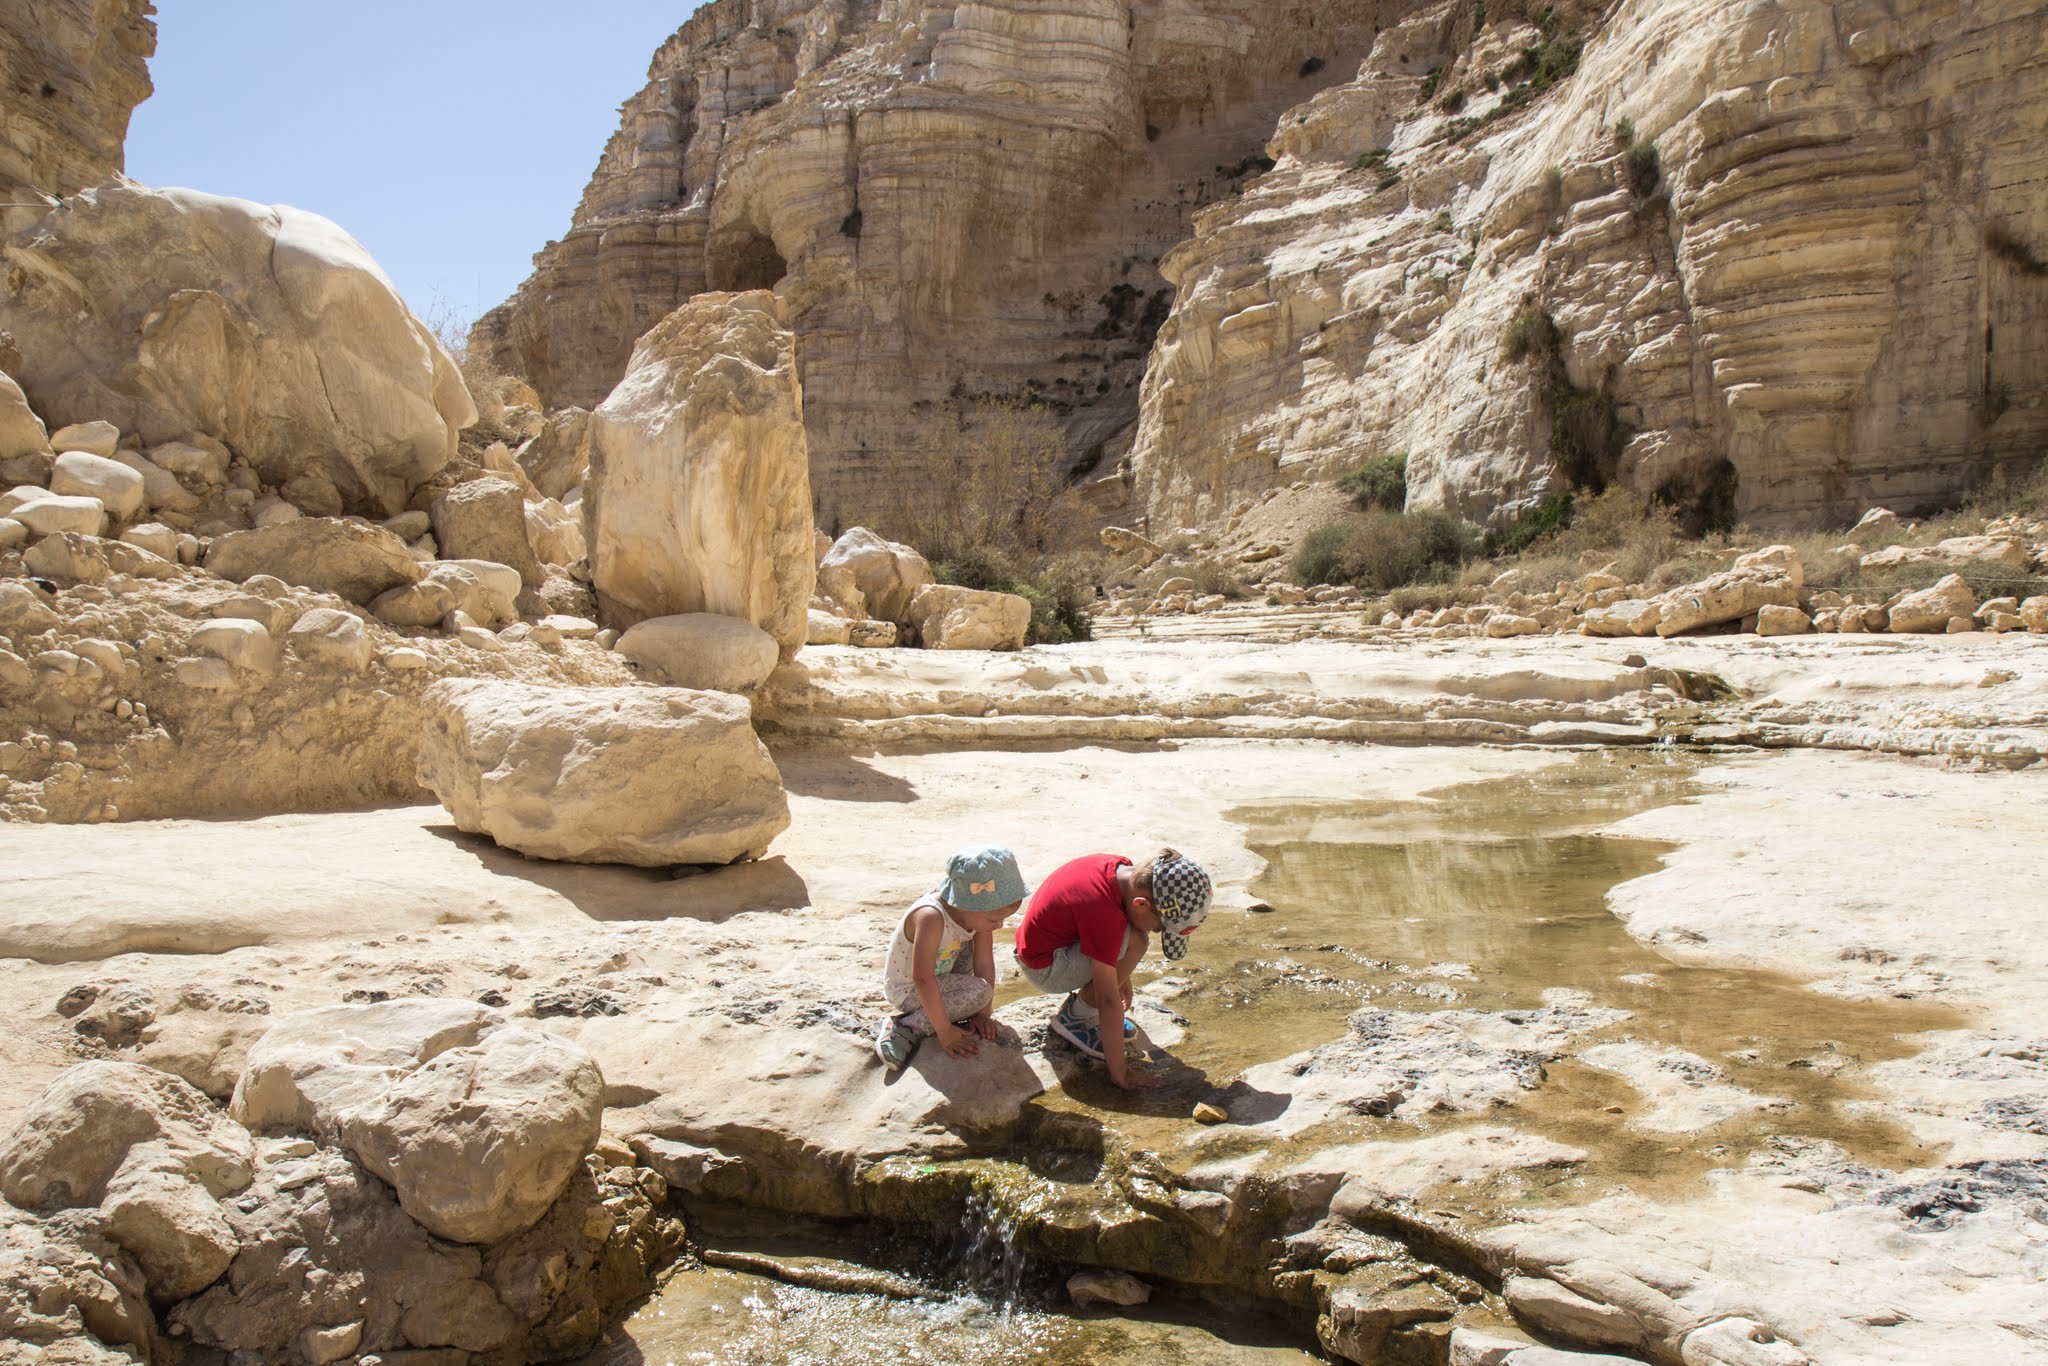 Izrael z dziećmi – wakacje nad morzem i na pustyni – plan na 7 dni